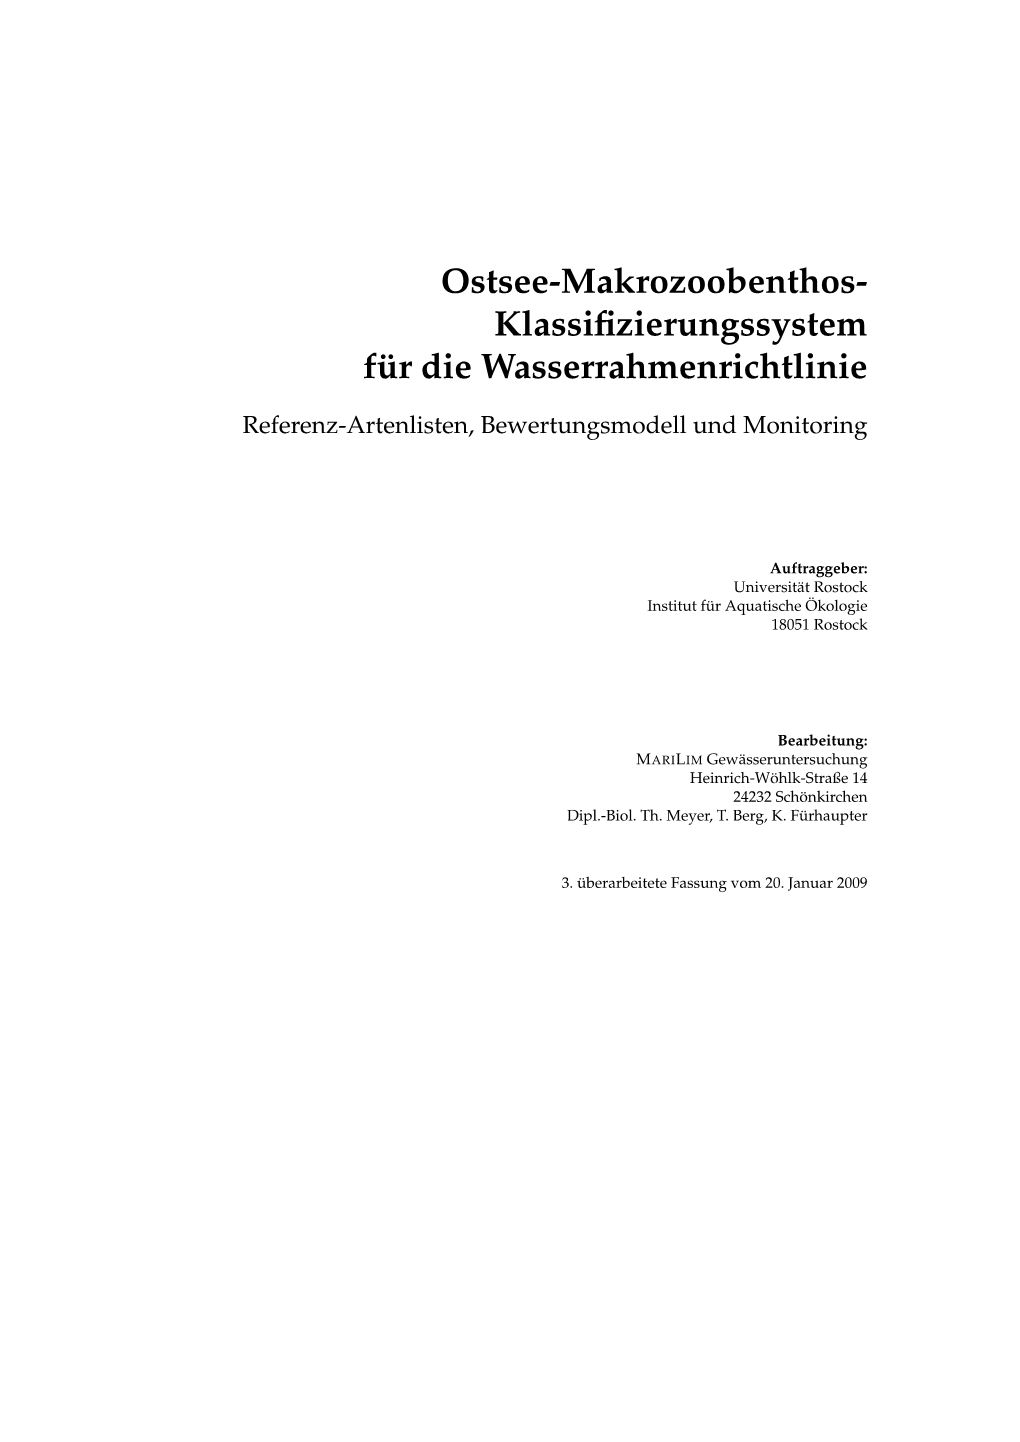 (2009): Ostsee-Makrozoobenthos